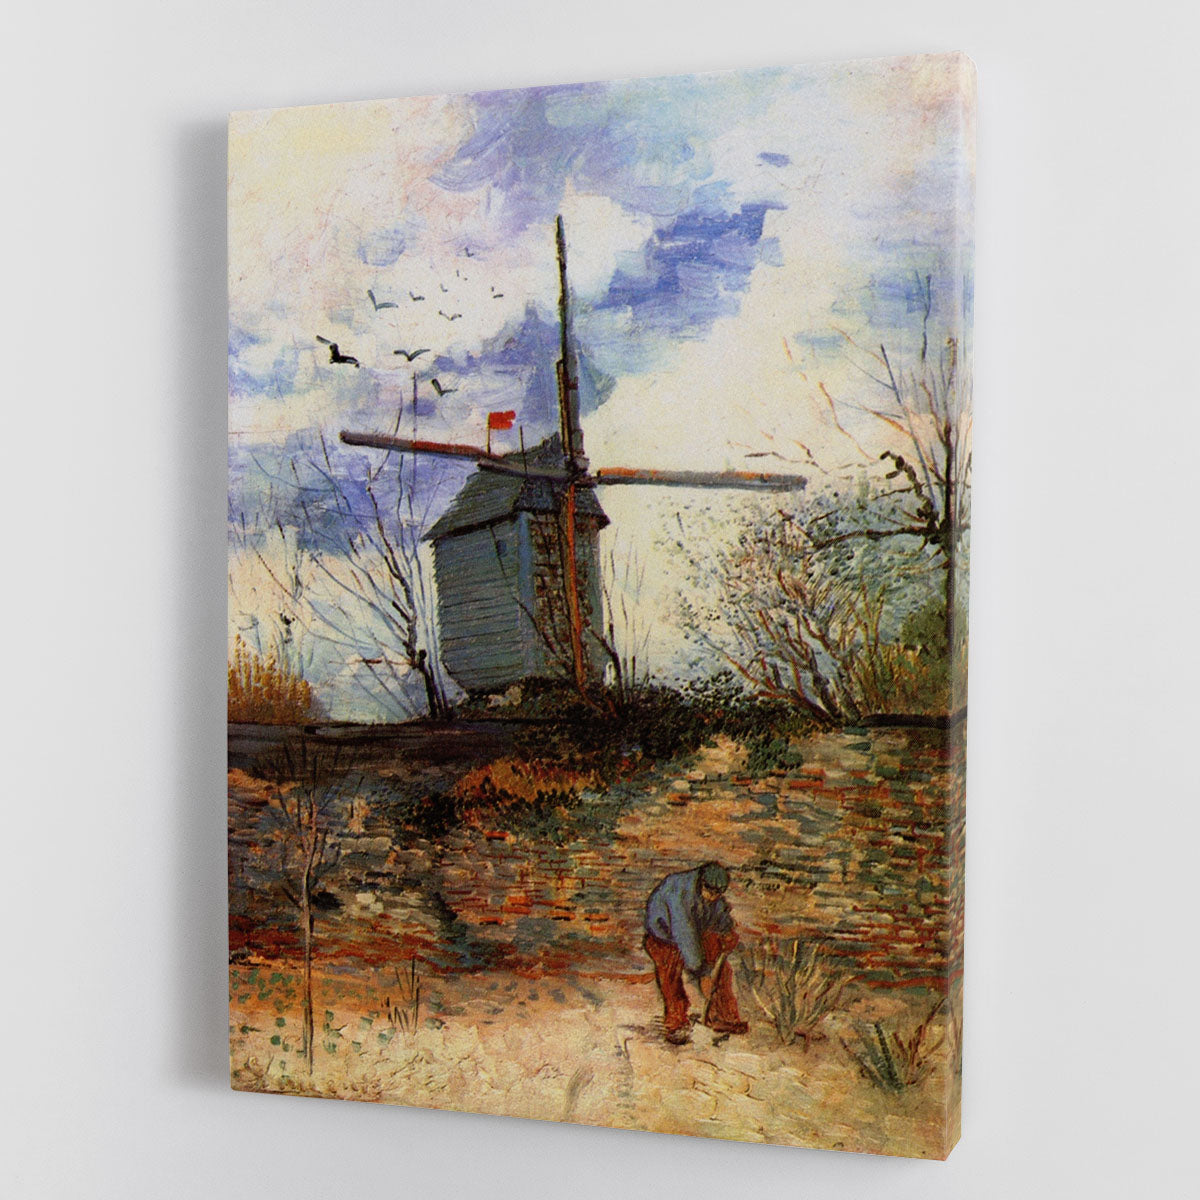 Le Moulin de la Galette 2 by Van Gogh Canvas Print or Poster - Canvas Art Rocks - 1